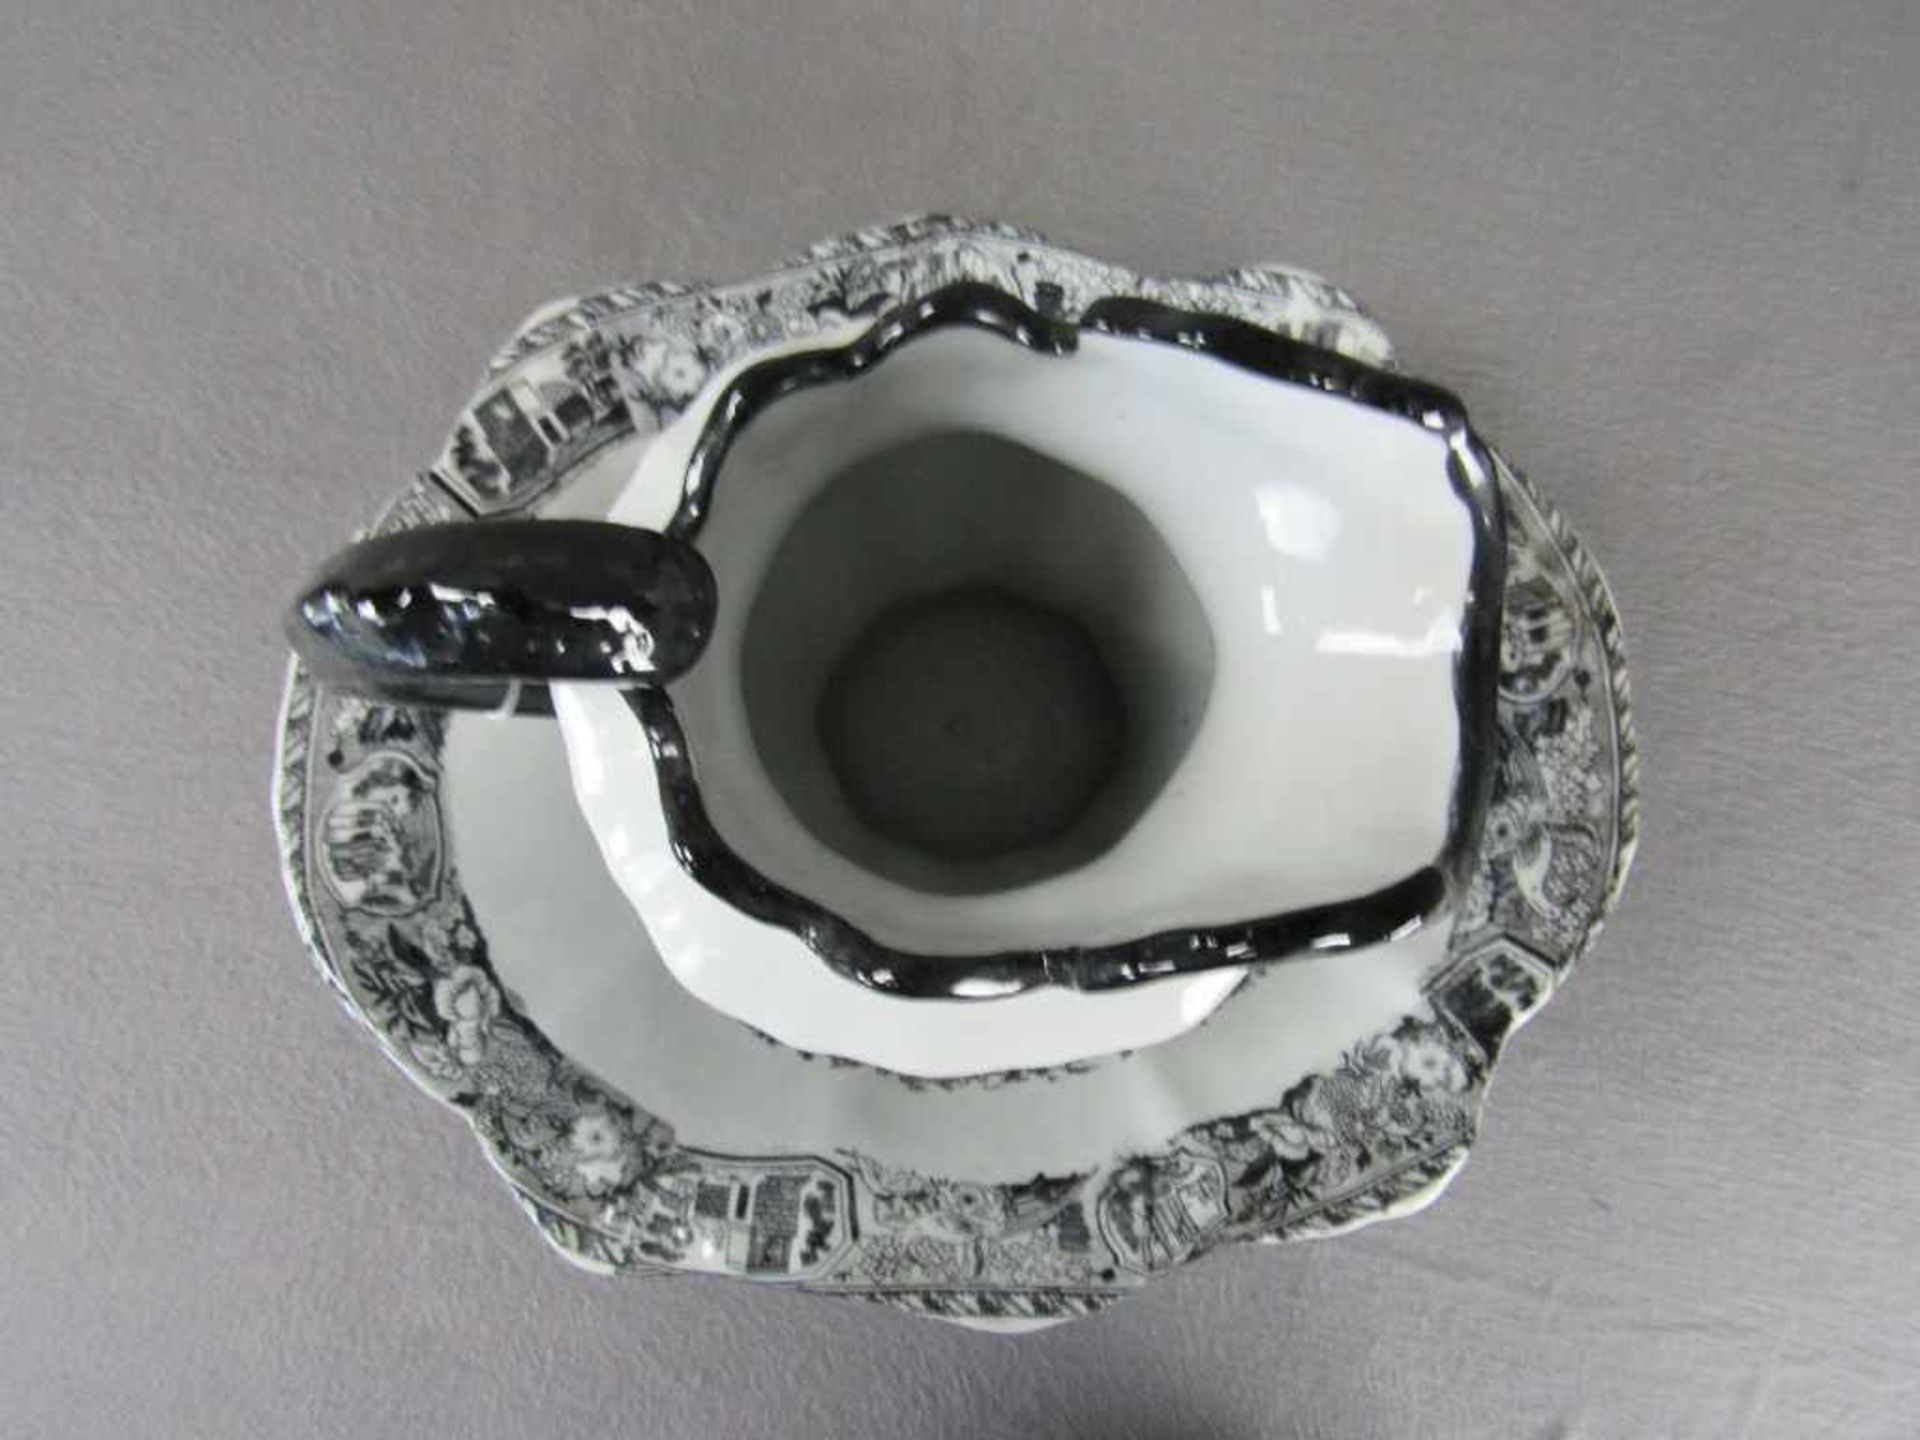 Englisches Waschset Schüssel und Henkelkrug Englische Szenerie ca.28cm hoch Keramik< - Image 5 of 5